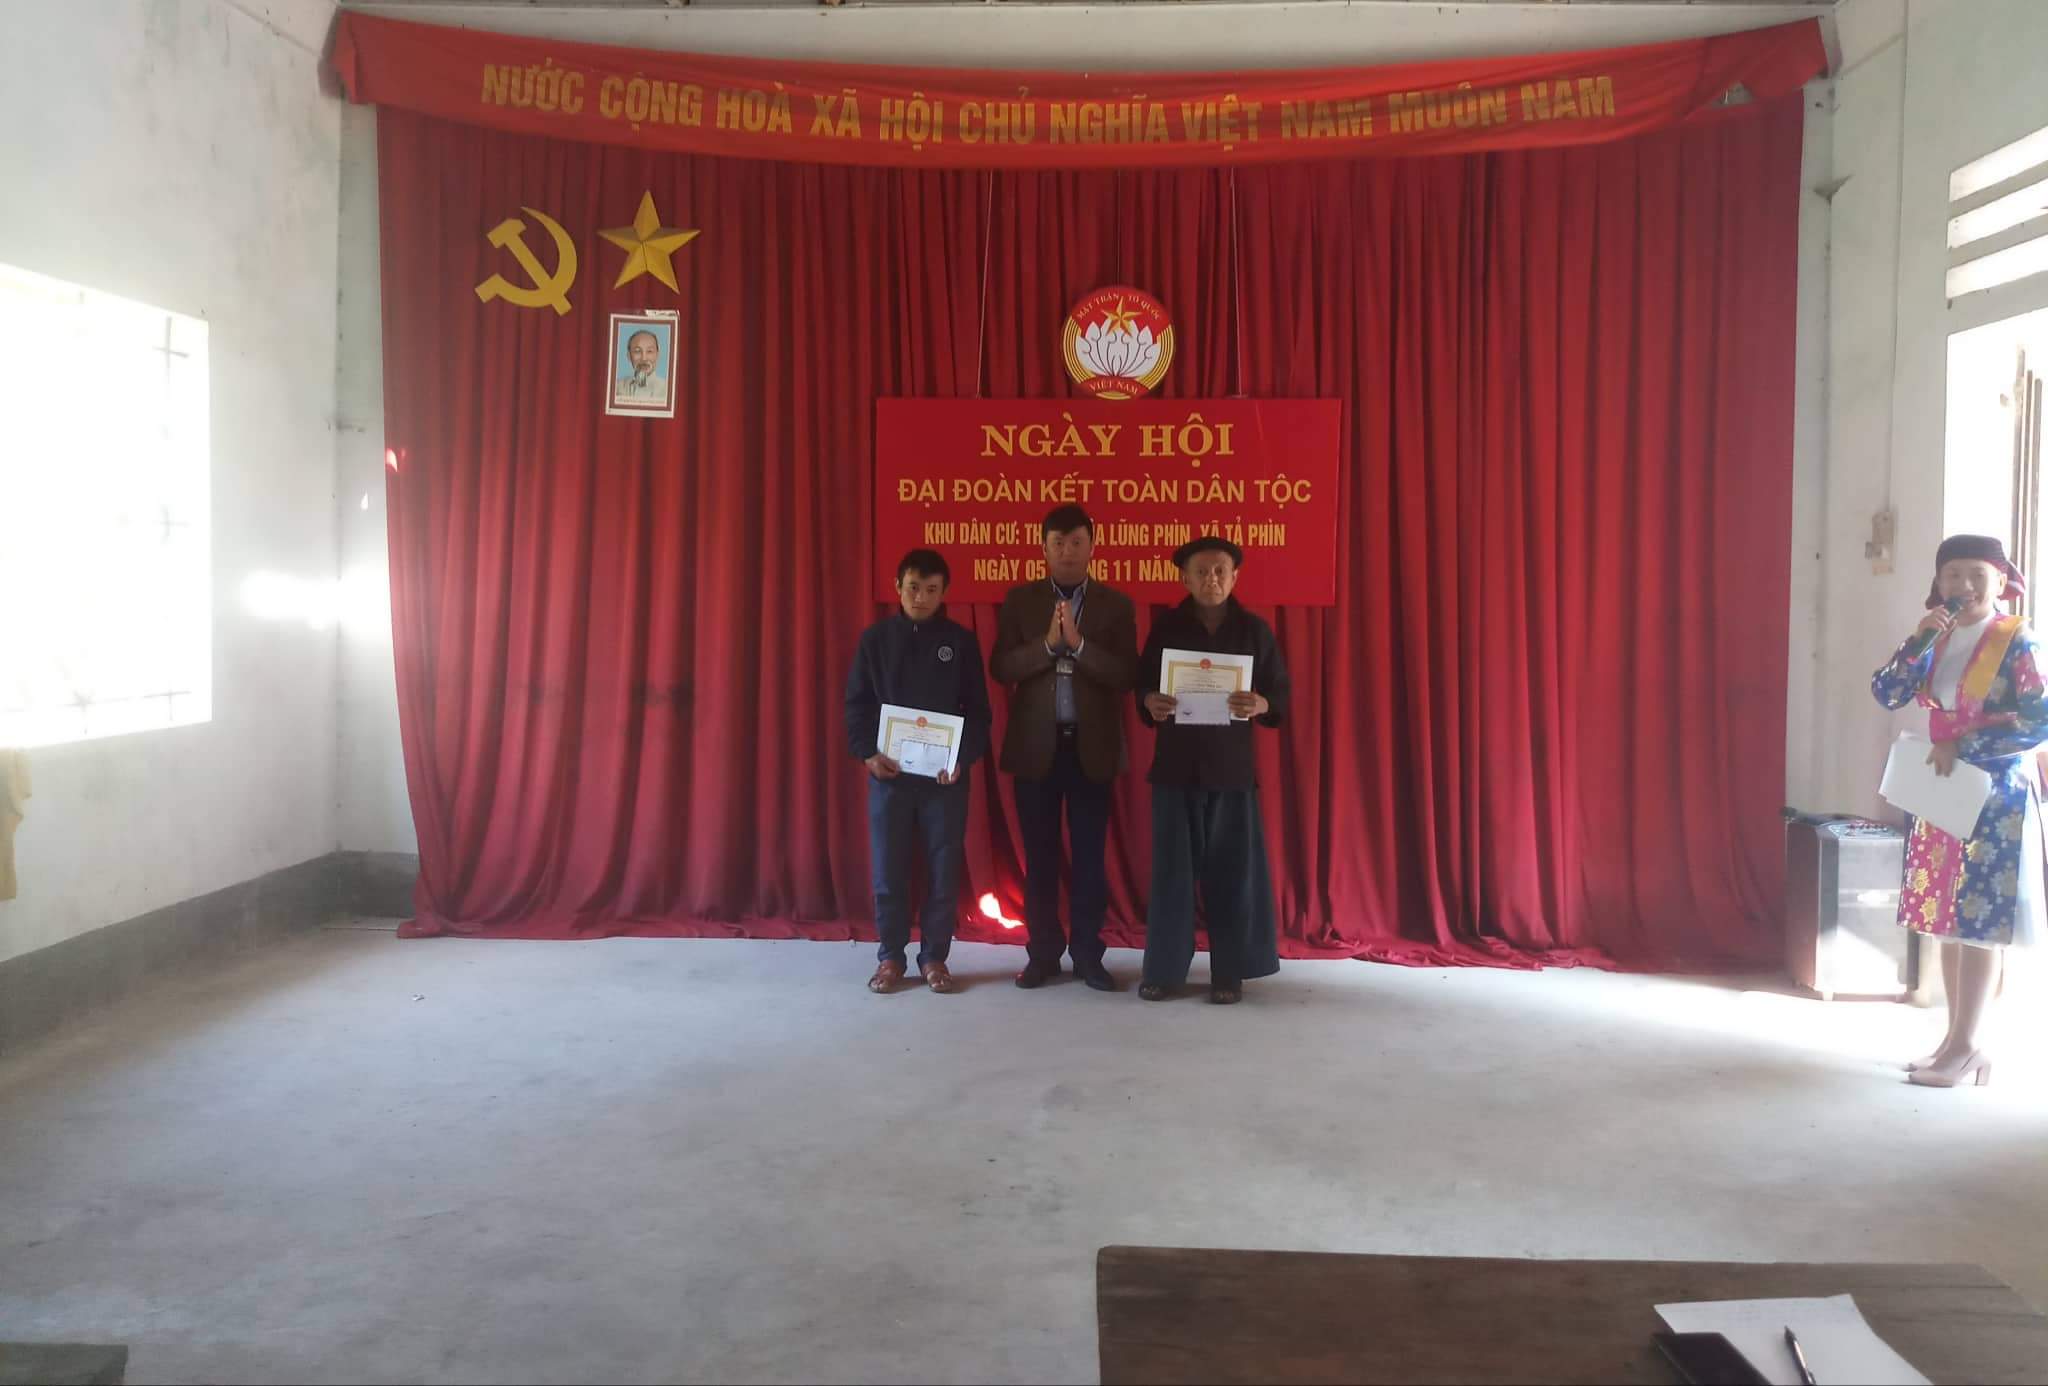 Thôn Nhìa Lũng Phìn “Ngày hội Đại đoàn kết toàn dân tộc khu dân cư” thôn năm 2019